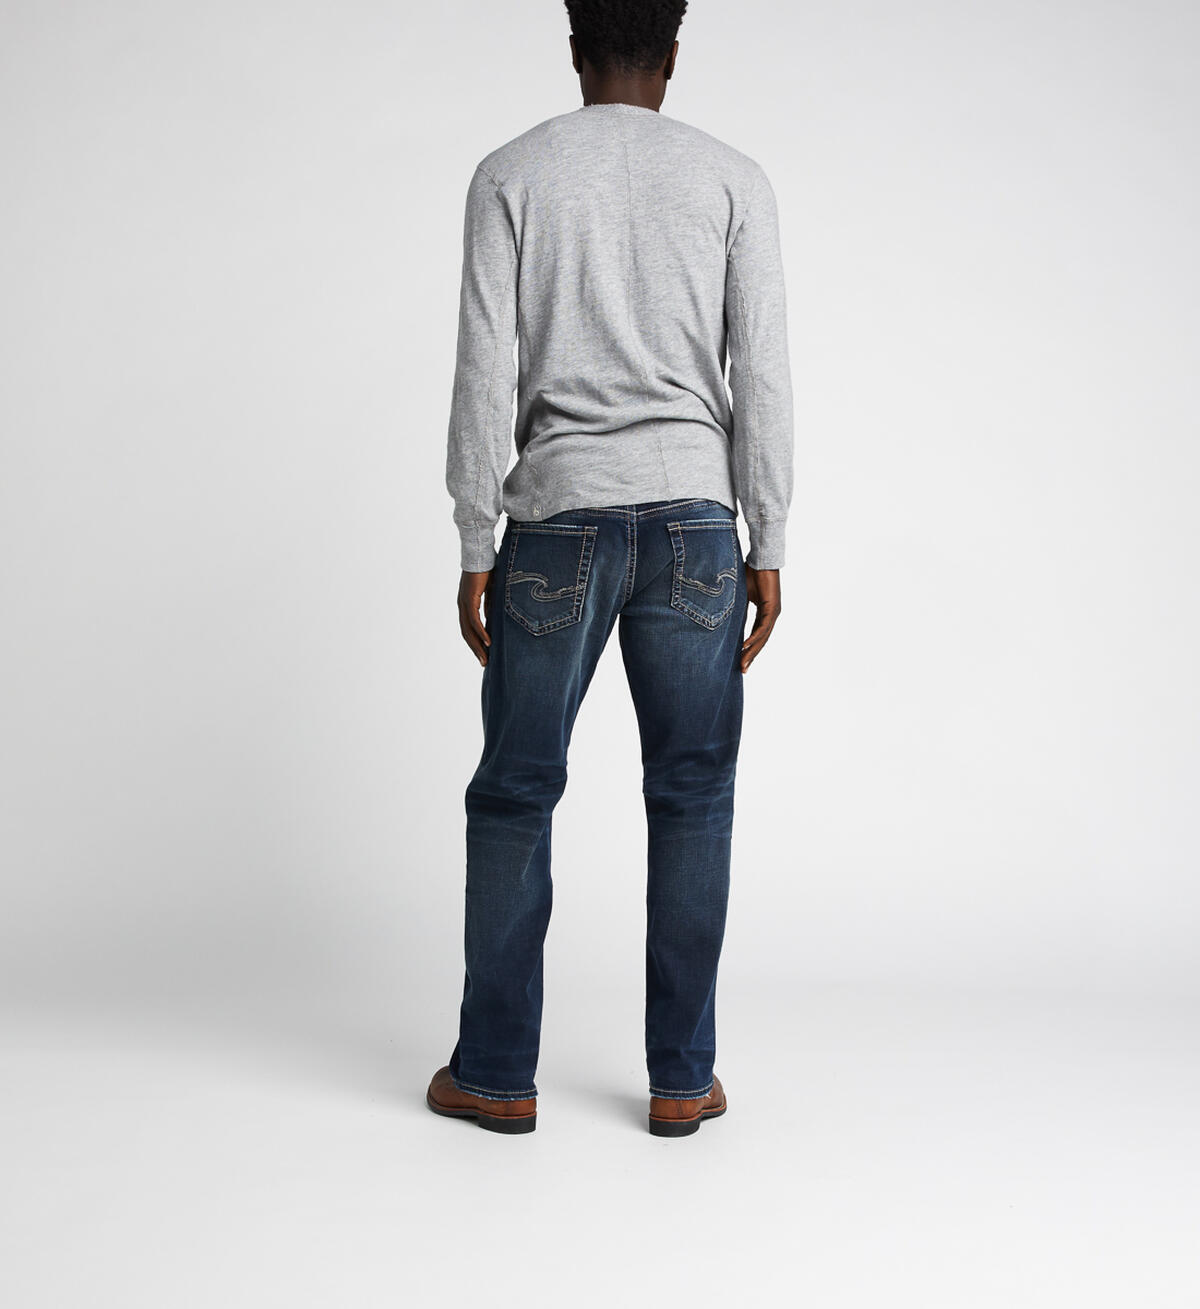 Gordie Loose Fit Straight Jeans, Indigo, hi-res image number 1